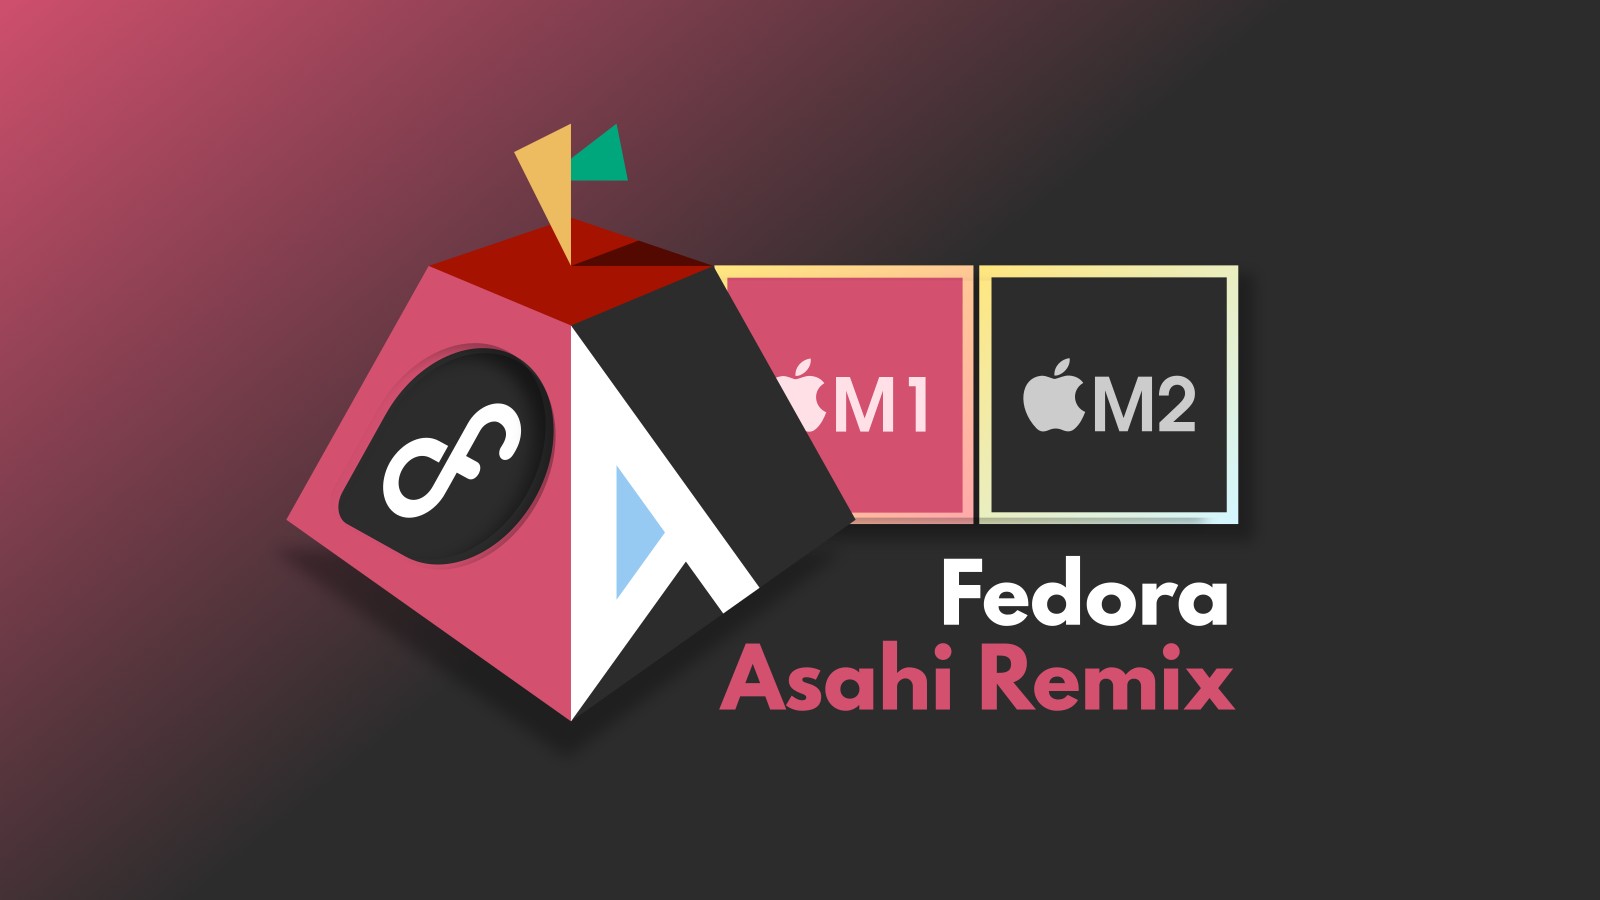 Fedora Asahi Remix offre importanti miglioramenti